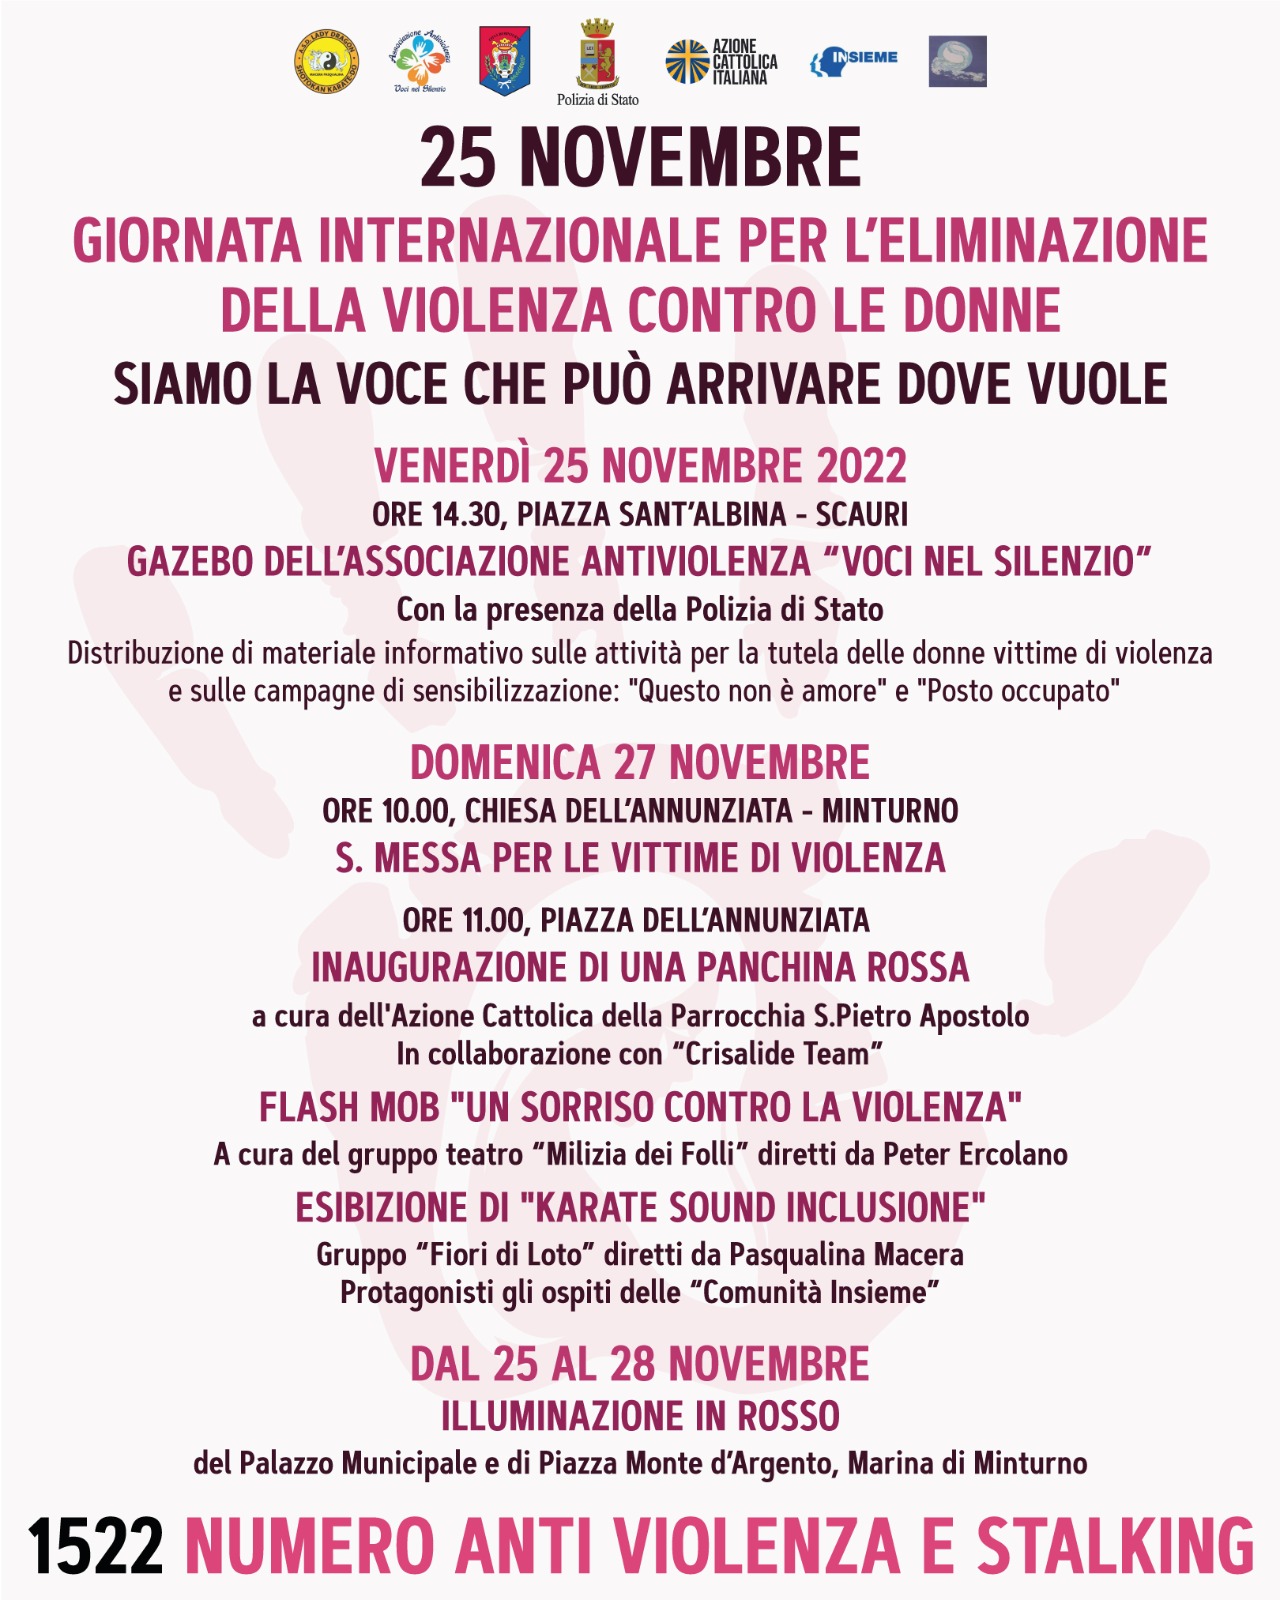 Giornata internazionale per l'eliminazione della violenza contro le donne - dal 25 al 28 novembre iniziative a Minturno